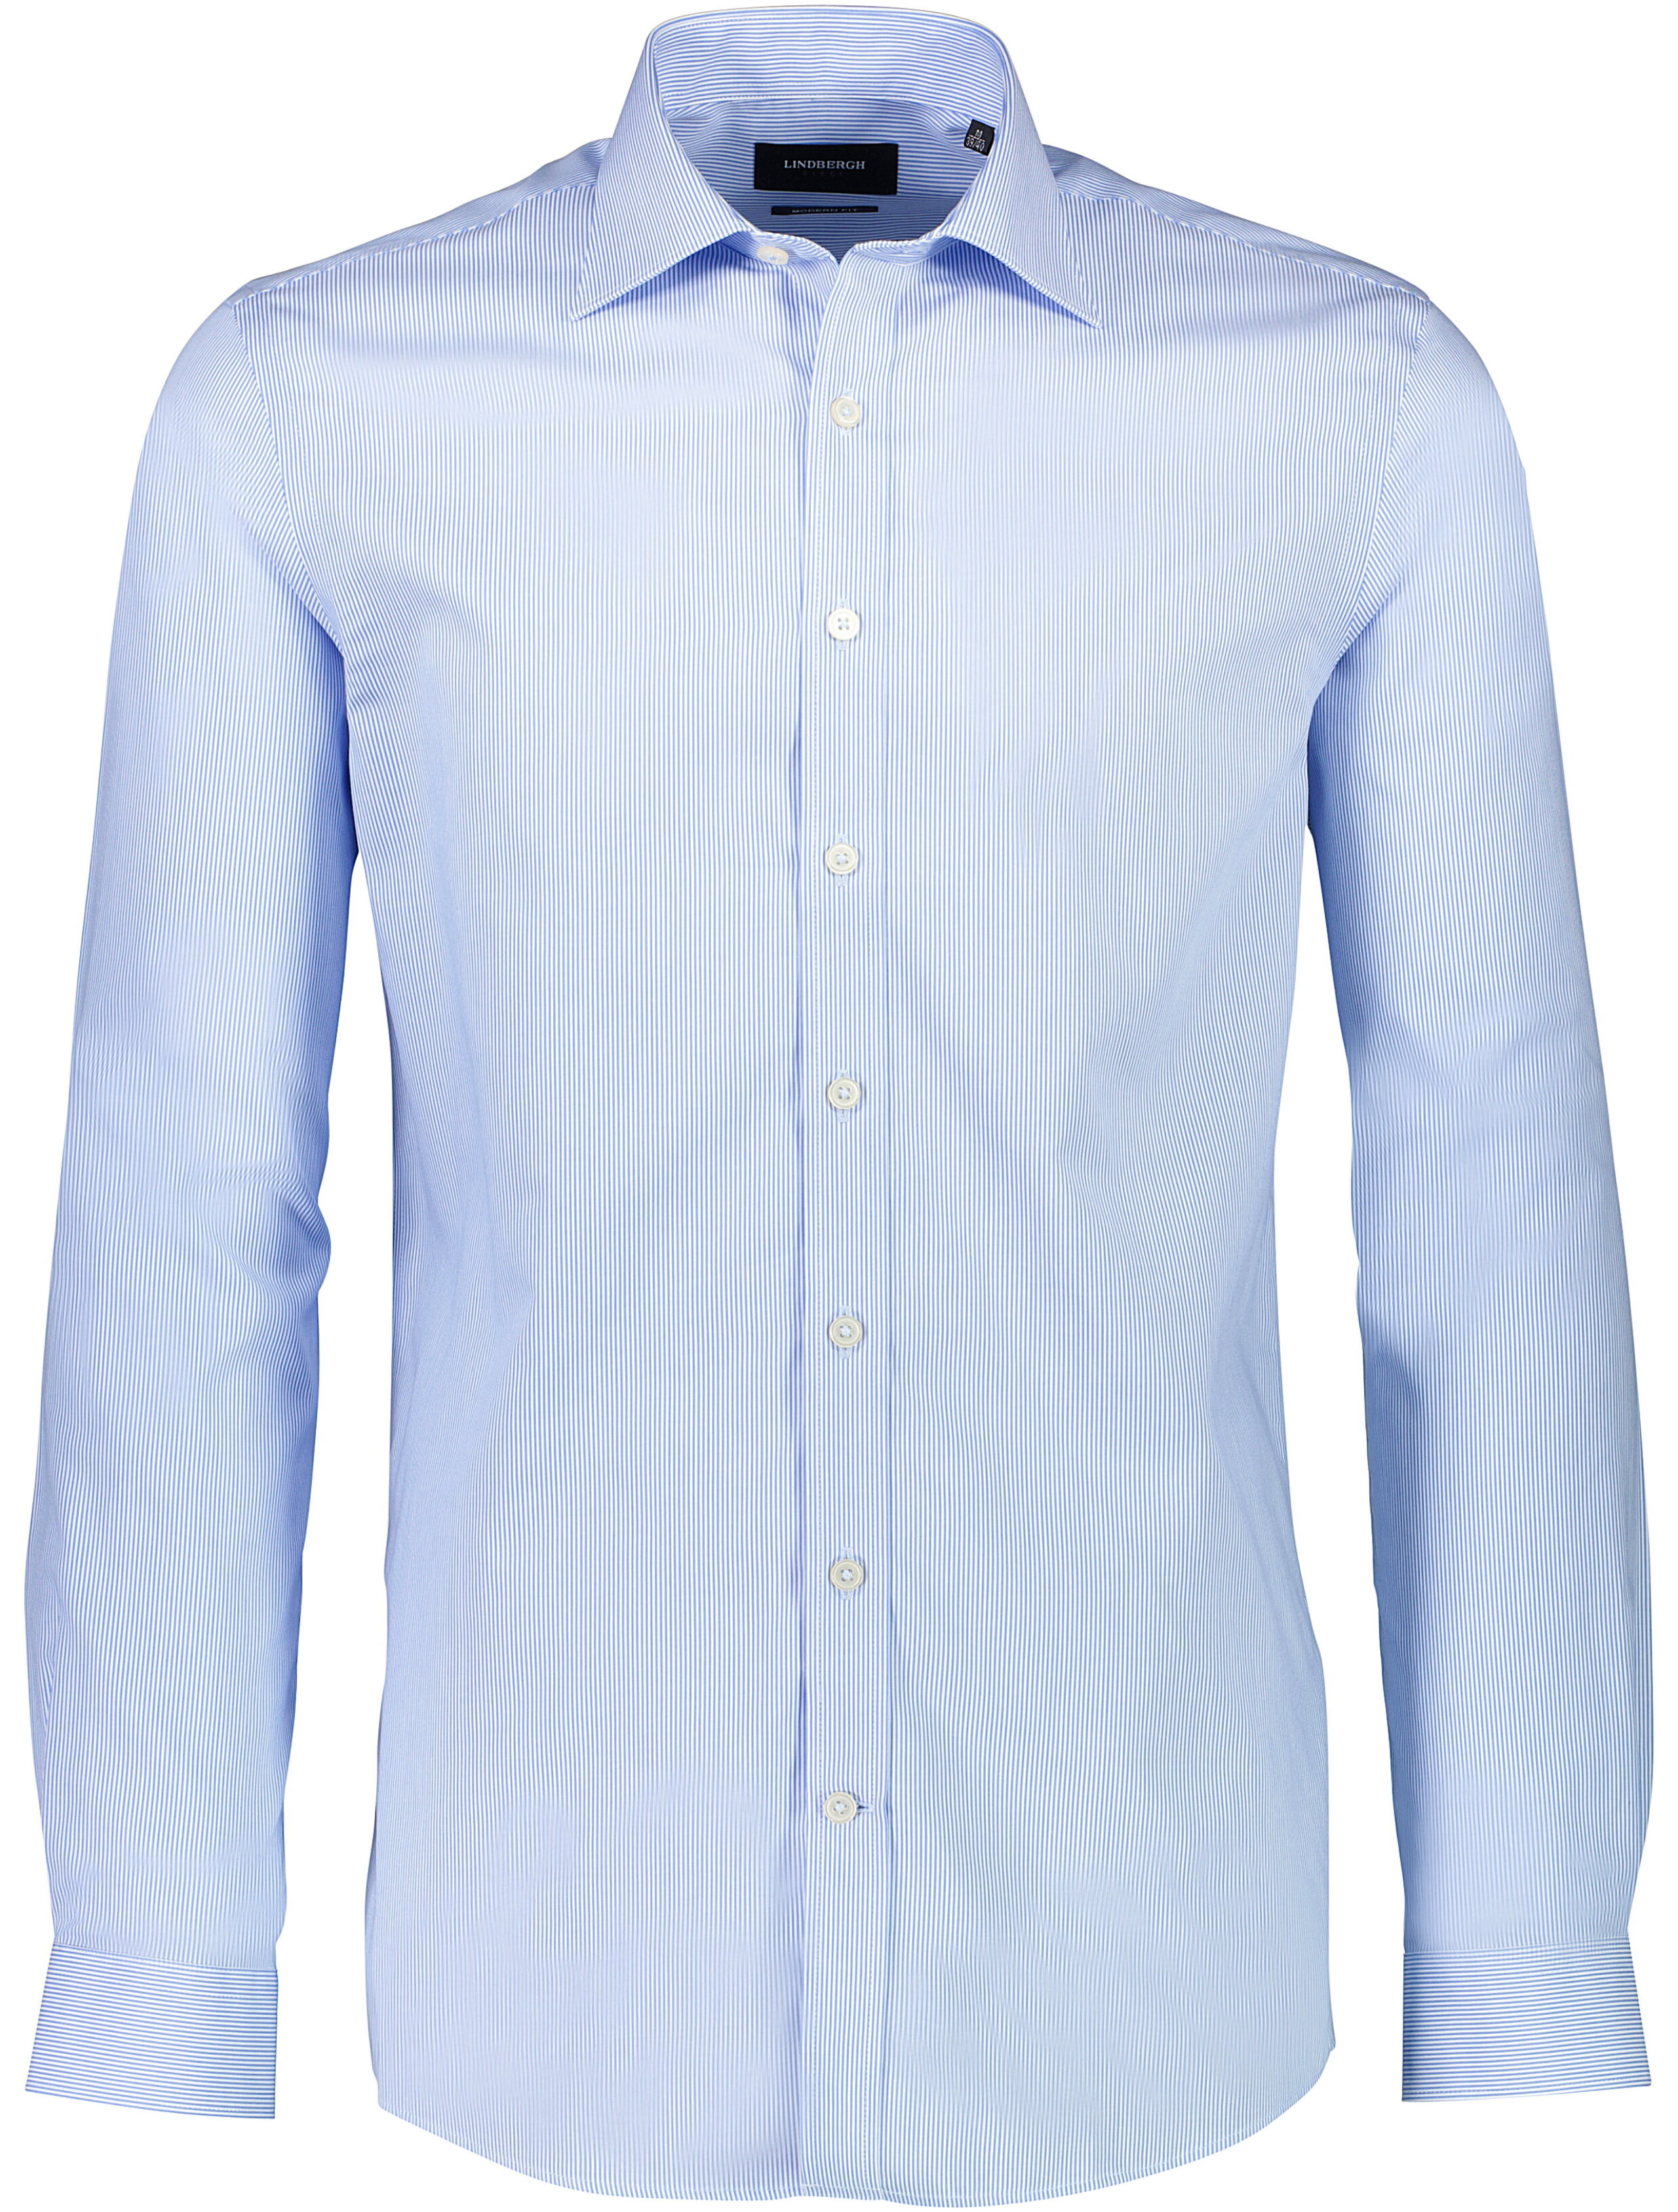 Lindbergh Business casual shirt blue / light blue